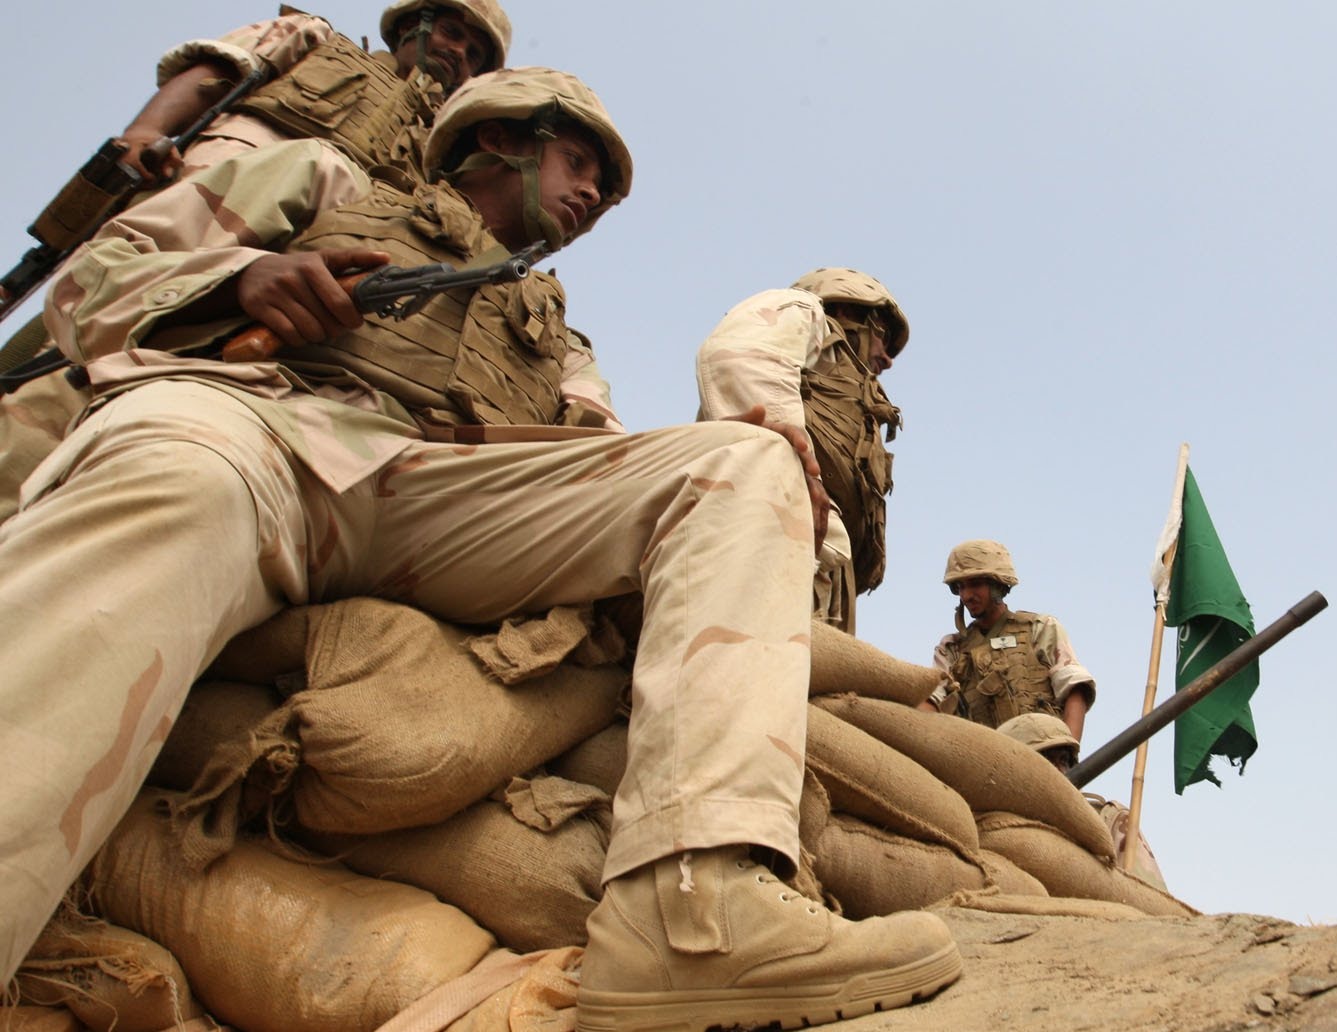 السعودية تعلن استشهاد جندي وضابط في مواجهات على الحدود اليمنية